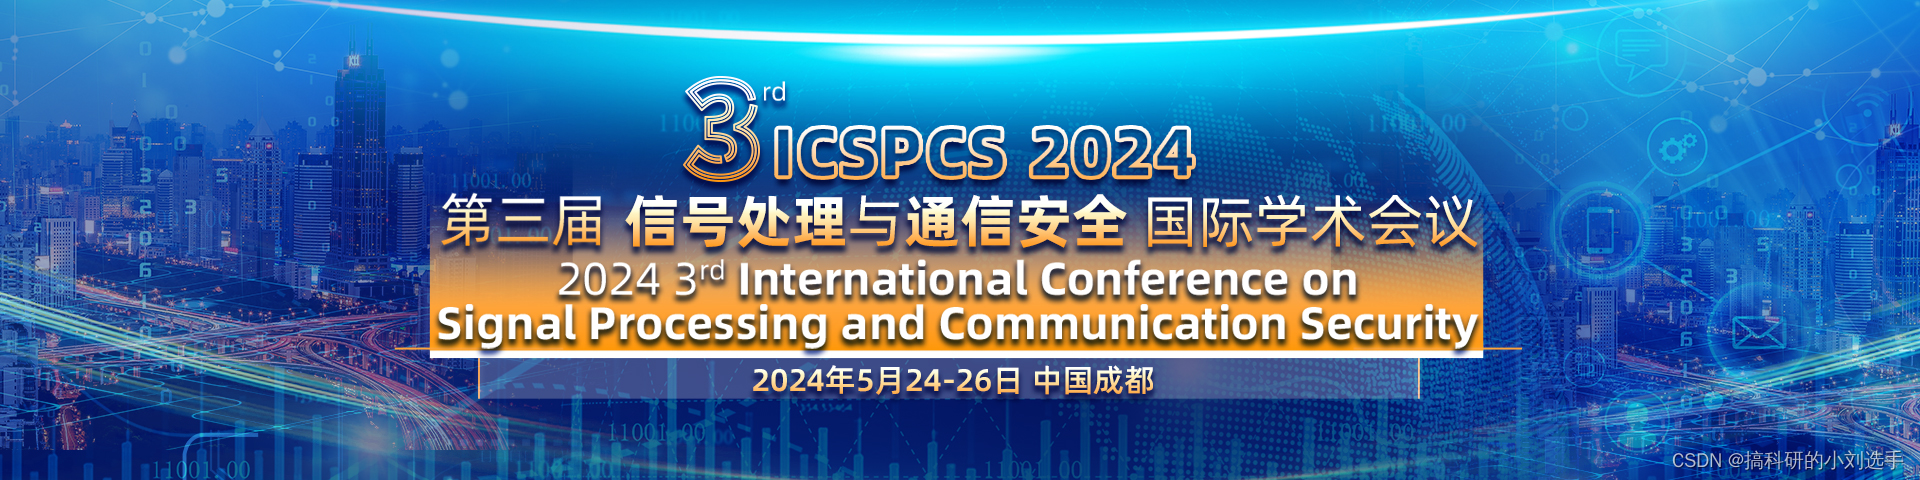 【EI会议征稿通知】第三届信号处理与通信安全国际学术会议（ICSPCS 2024）